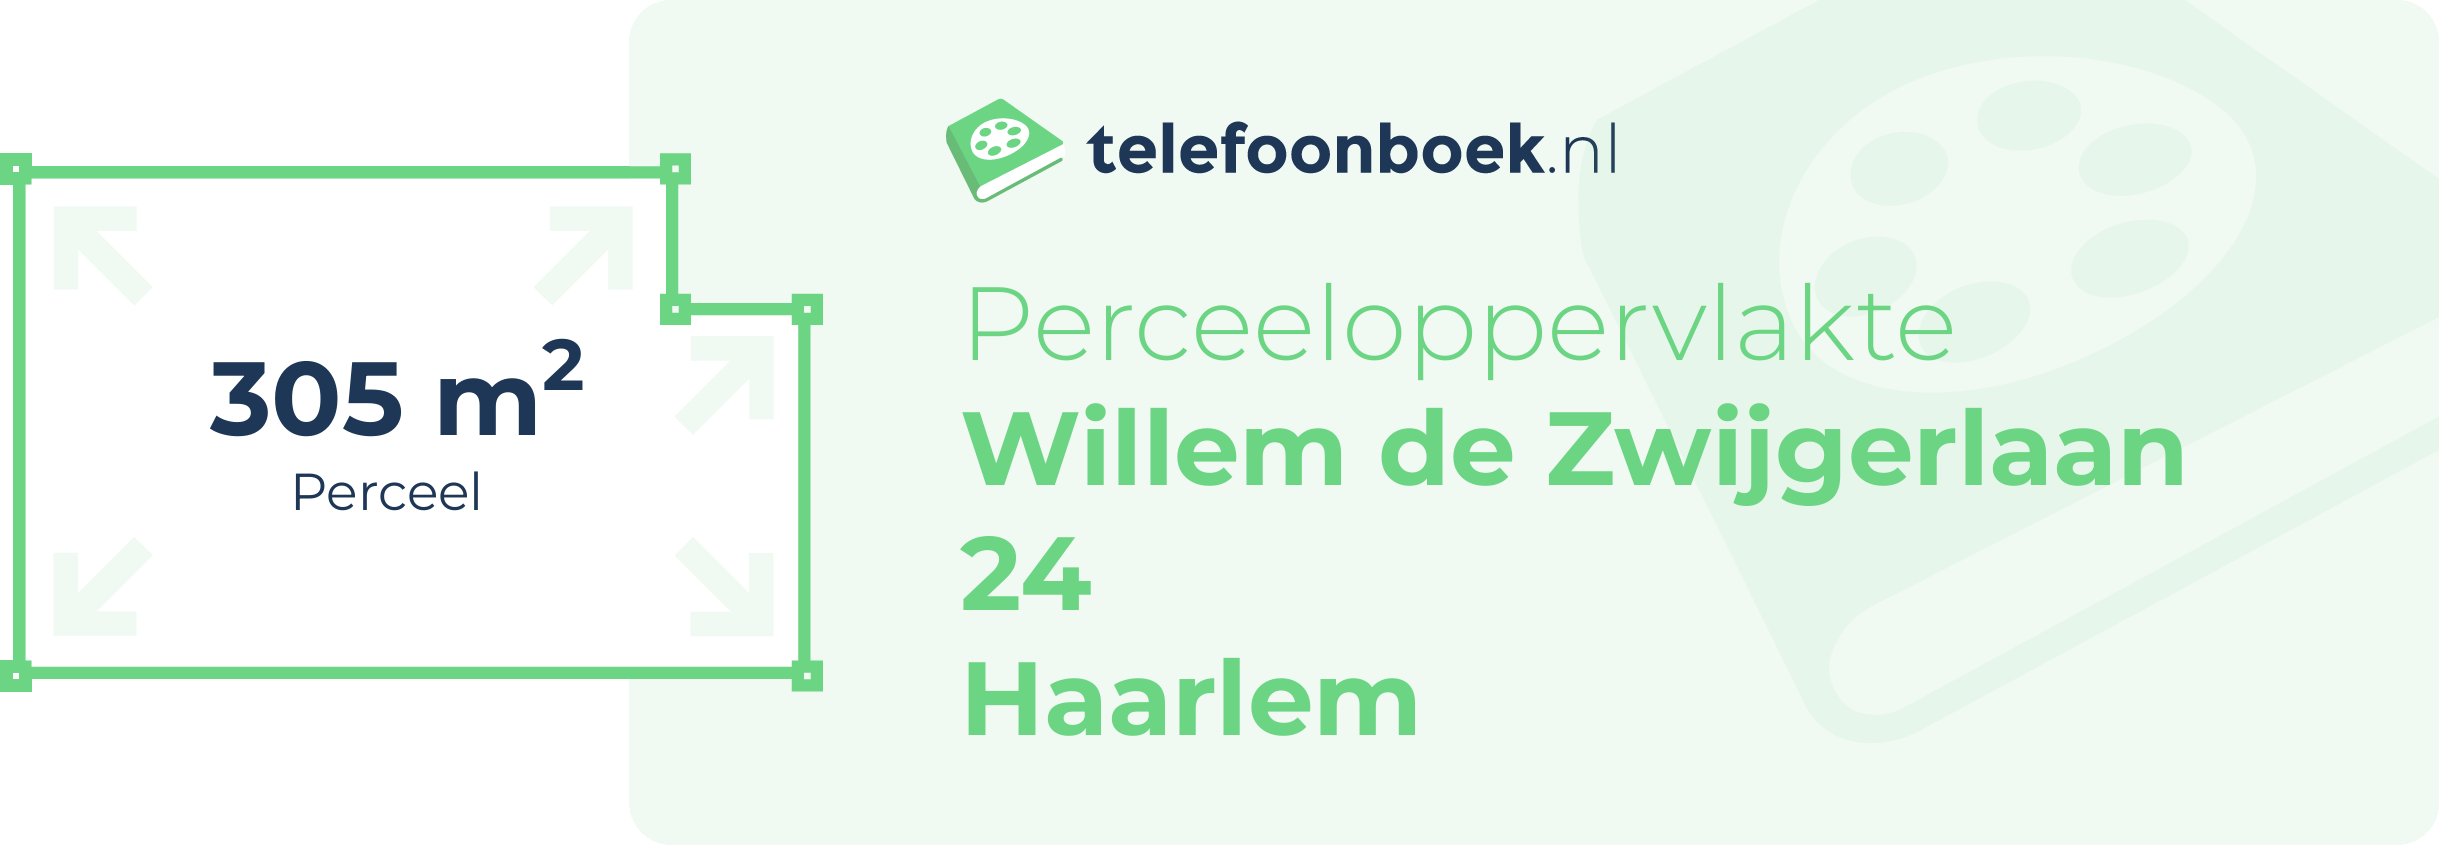 Perceeloppervlakte Willem De Zwijgerlaan 24 Haarlem